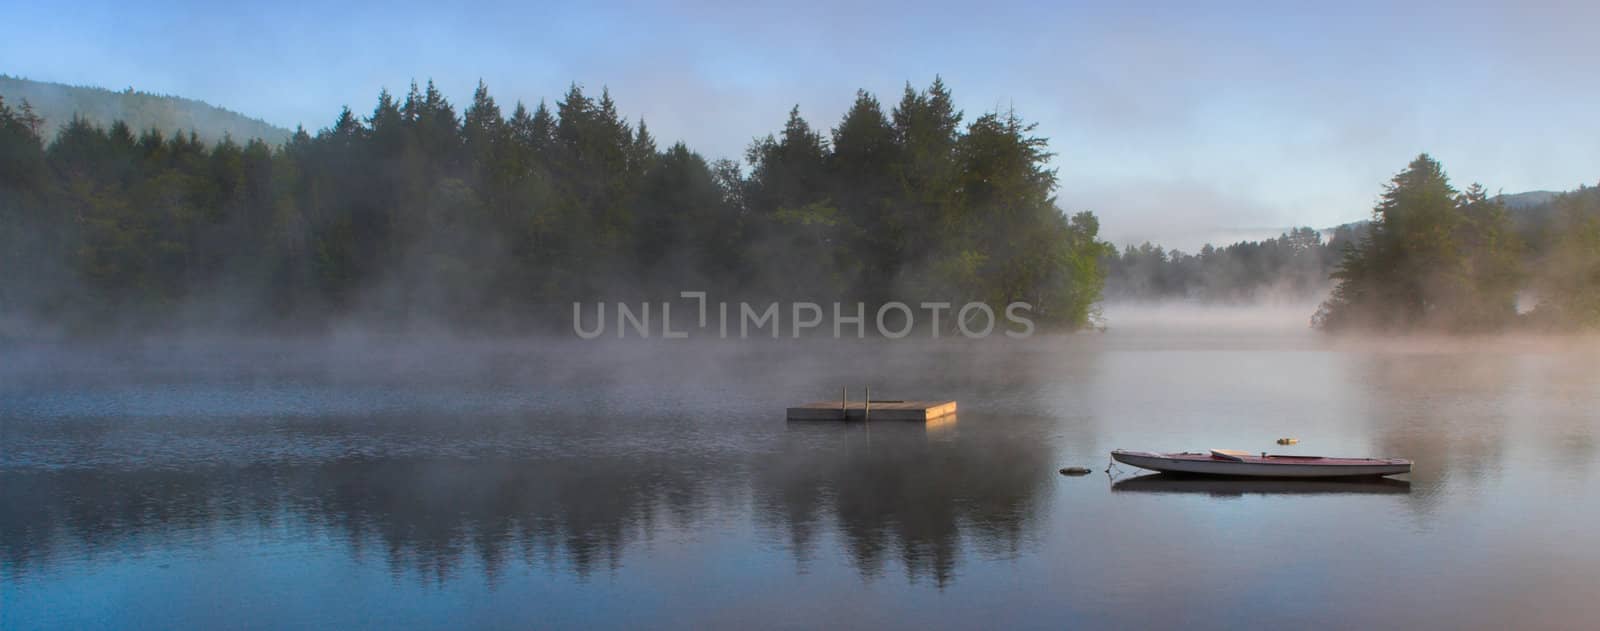 Morning Fog on a Lake (Panorama) by sbonk